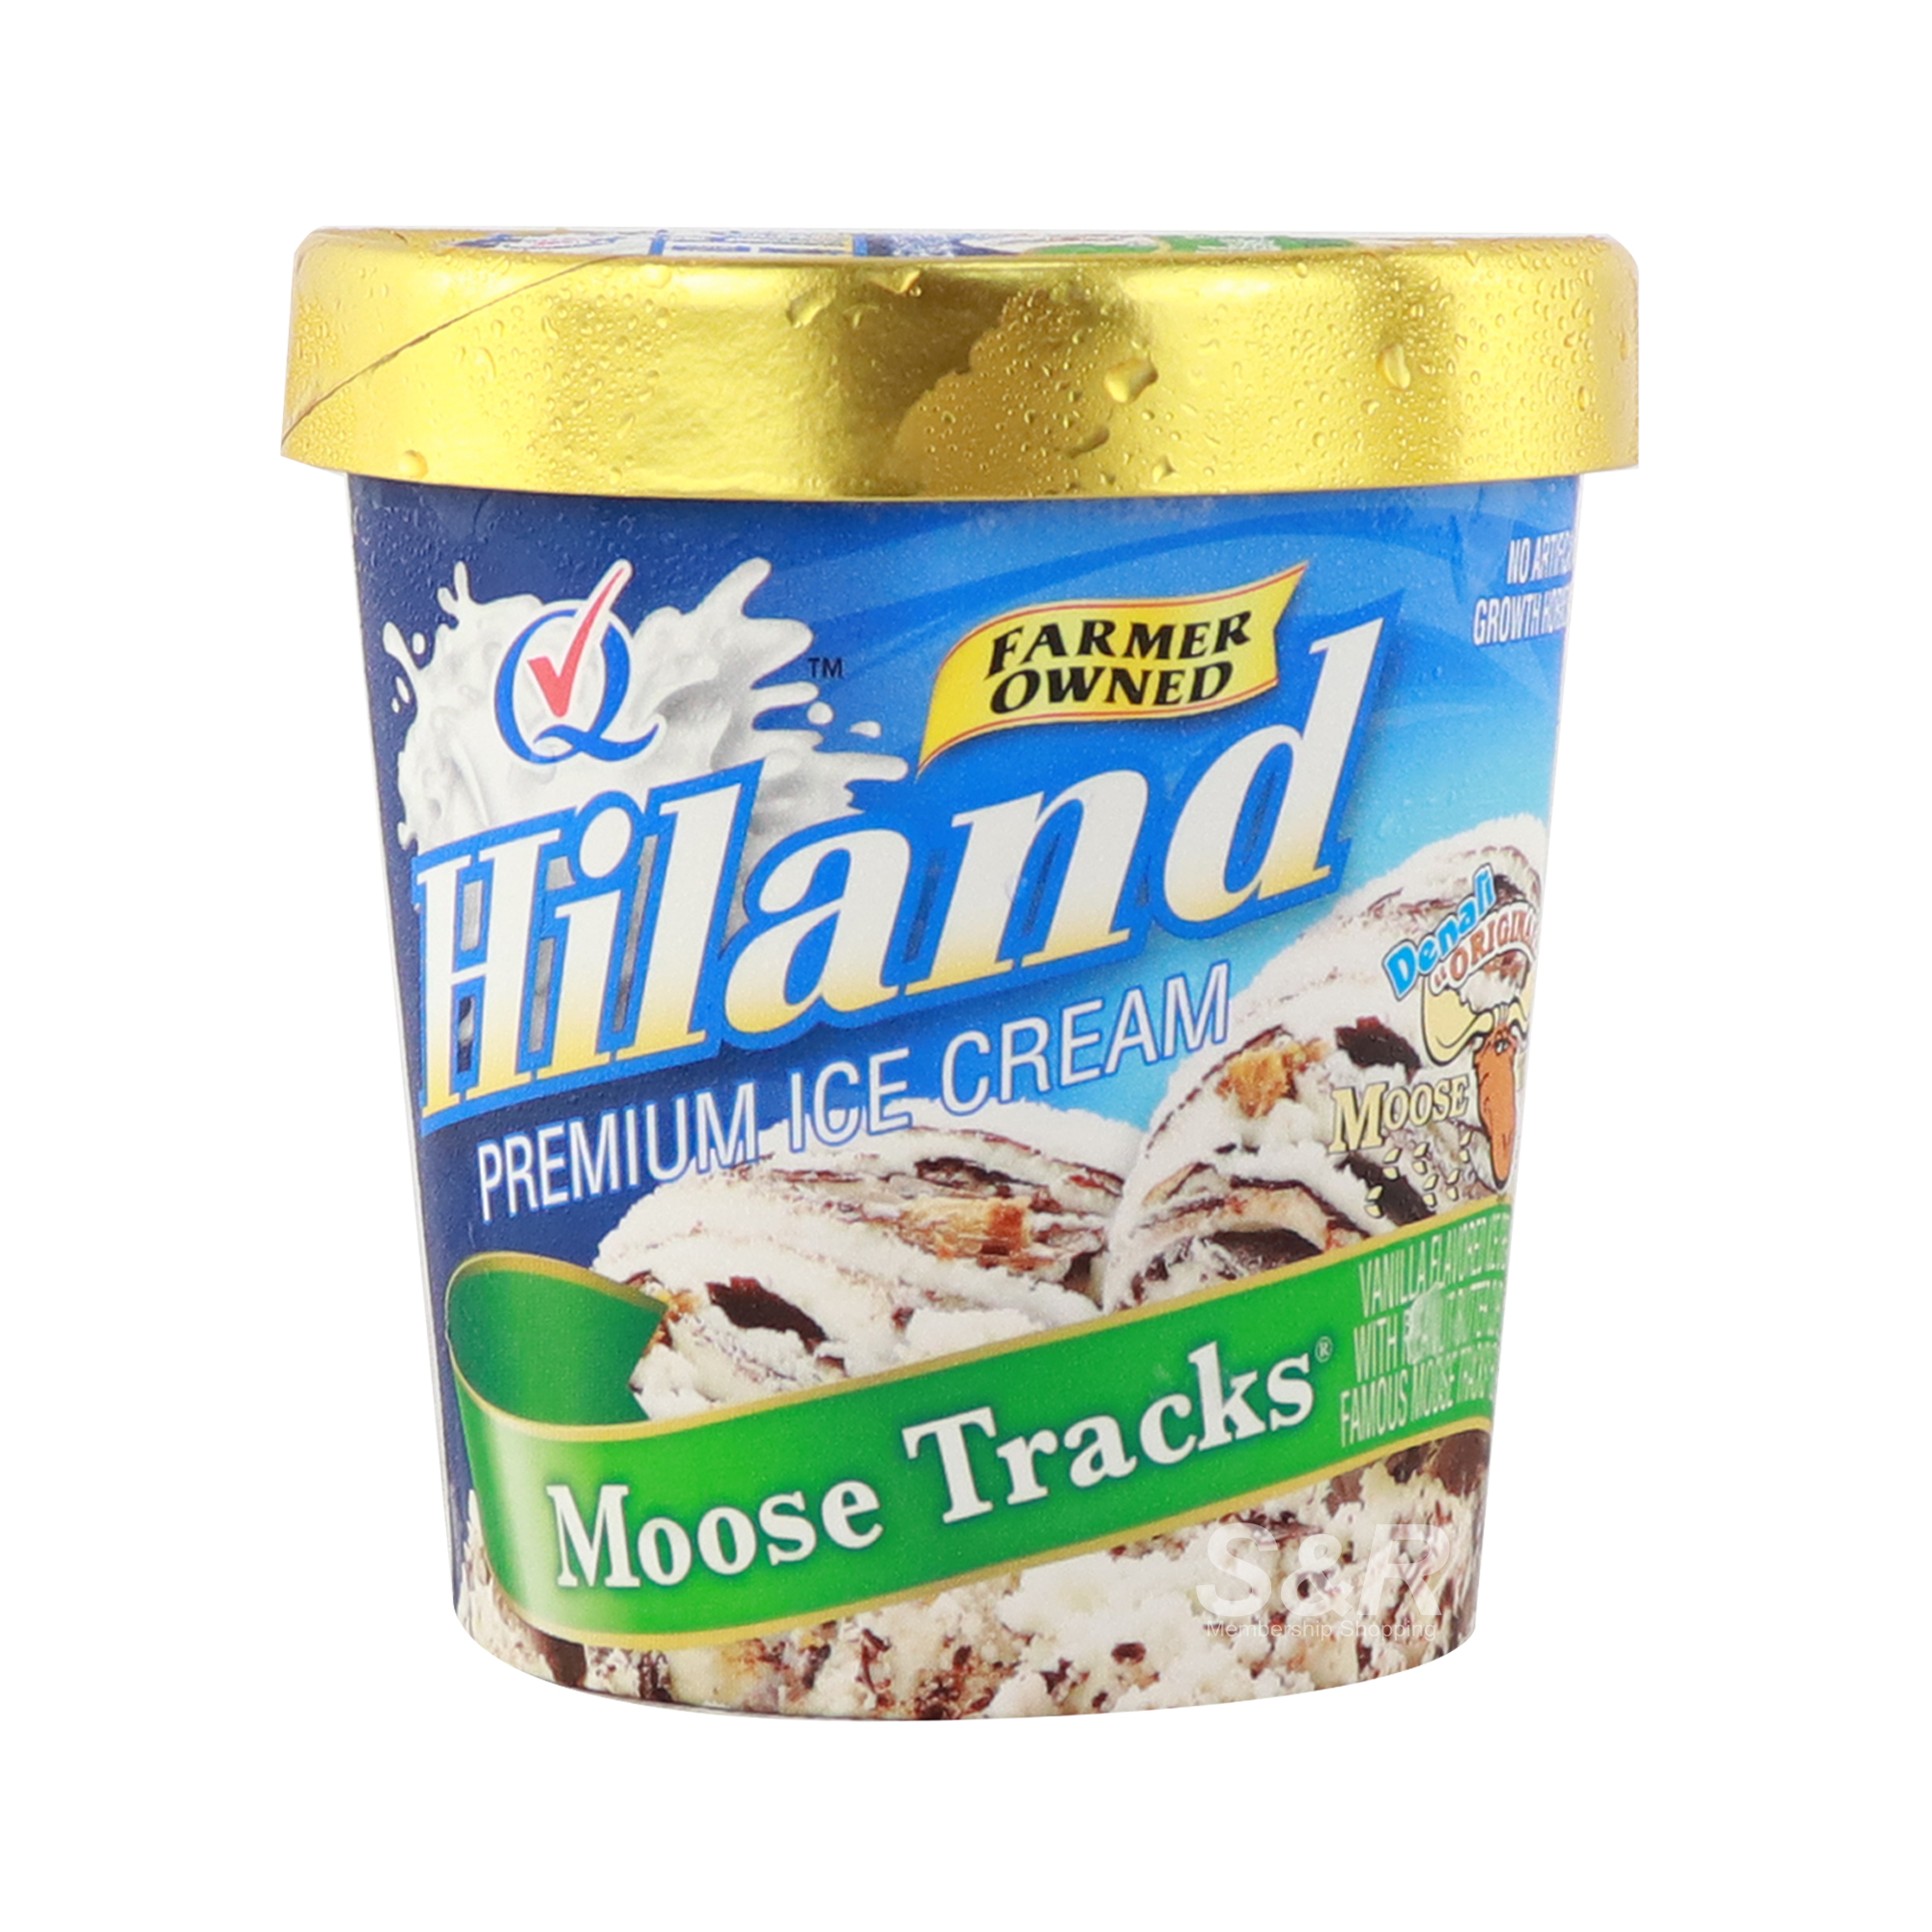 Hiland Premium Ice Cream Moose Tracks Flavor 473mL